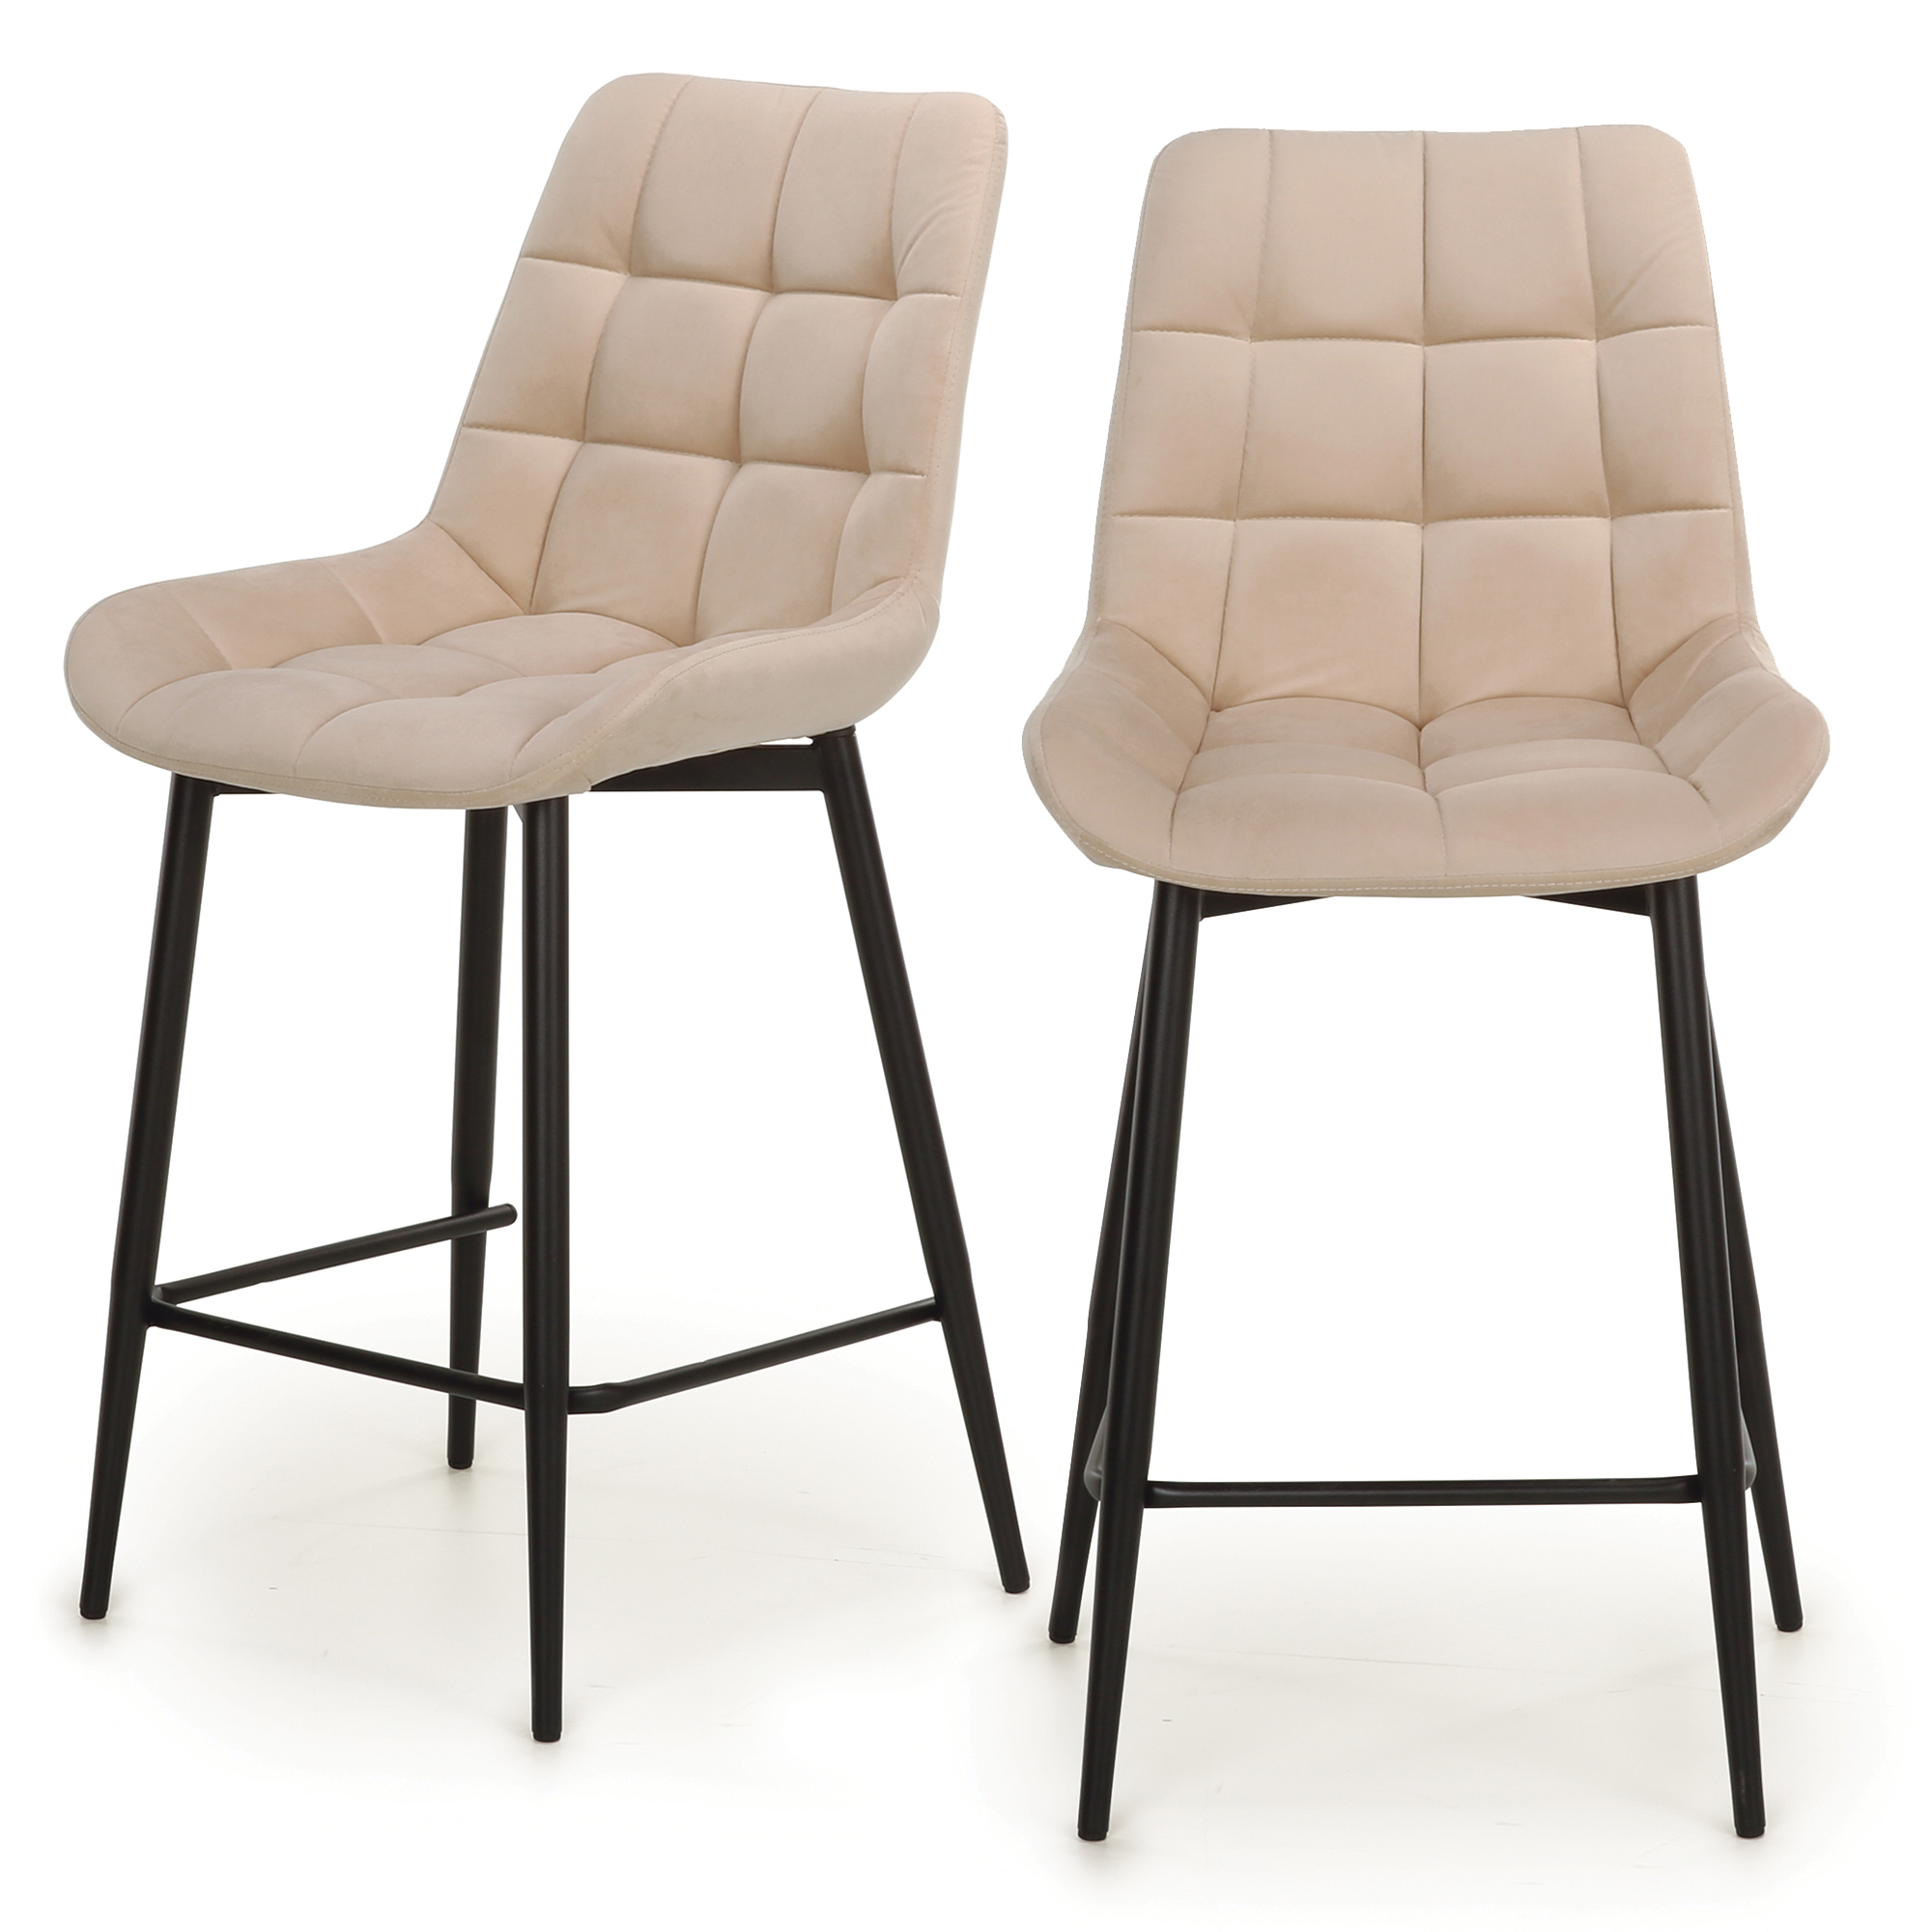 Комплект полубарных стульев 2 шт. Beneli Бентли 2022070018002, черный/бежевый